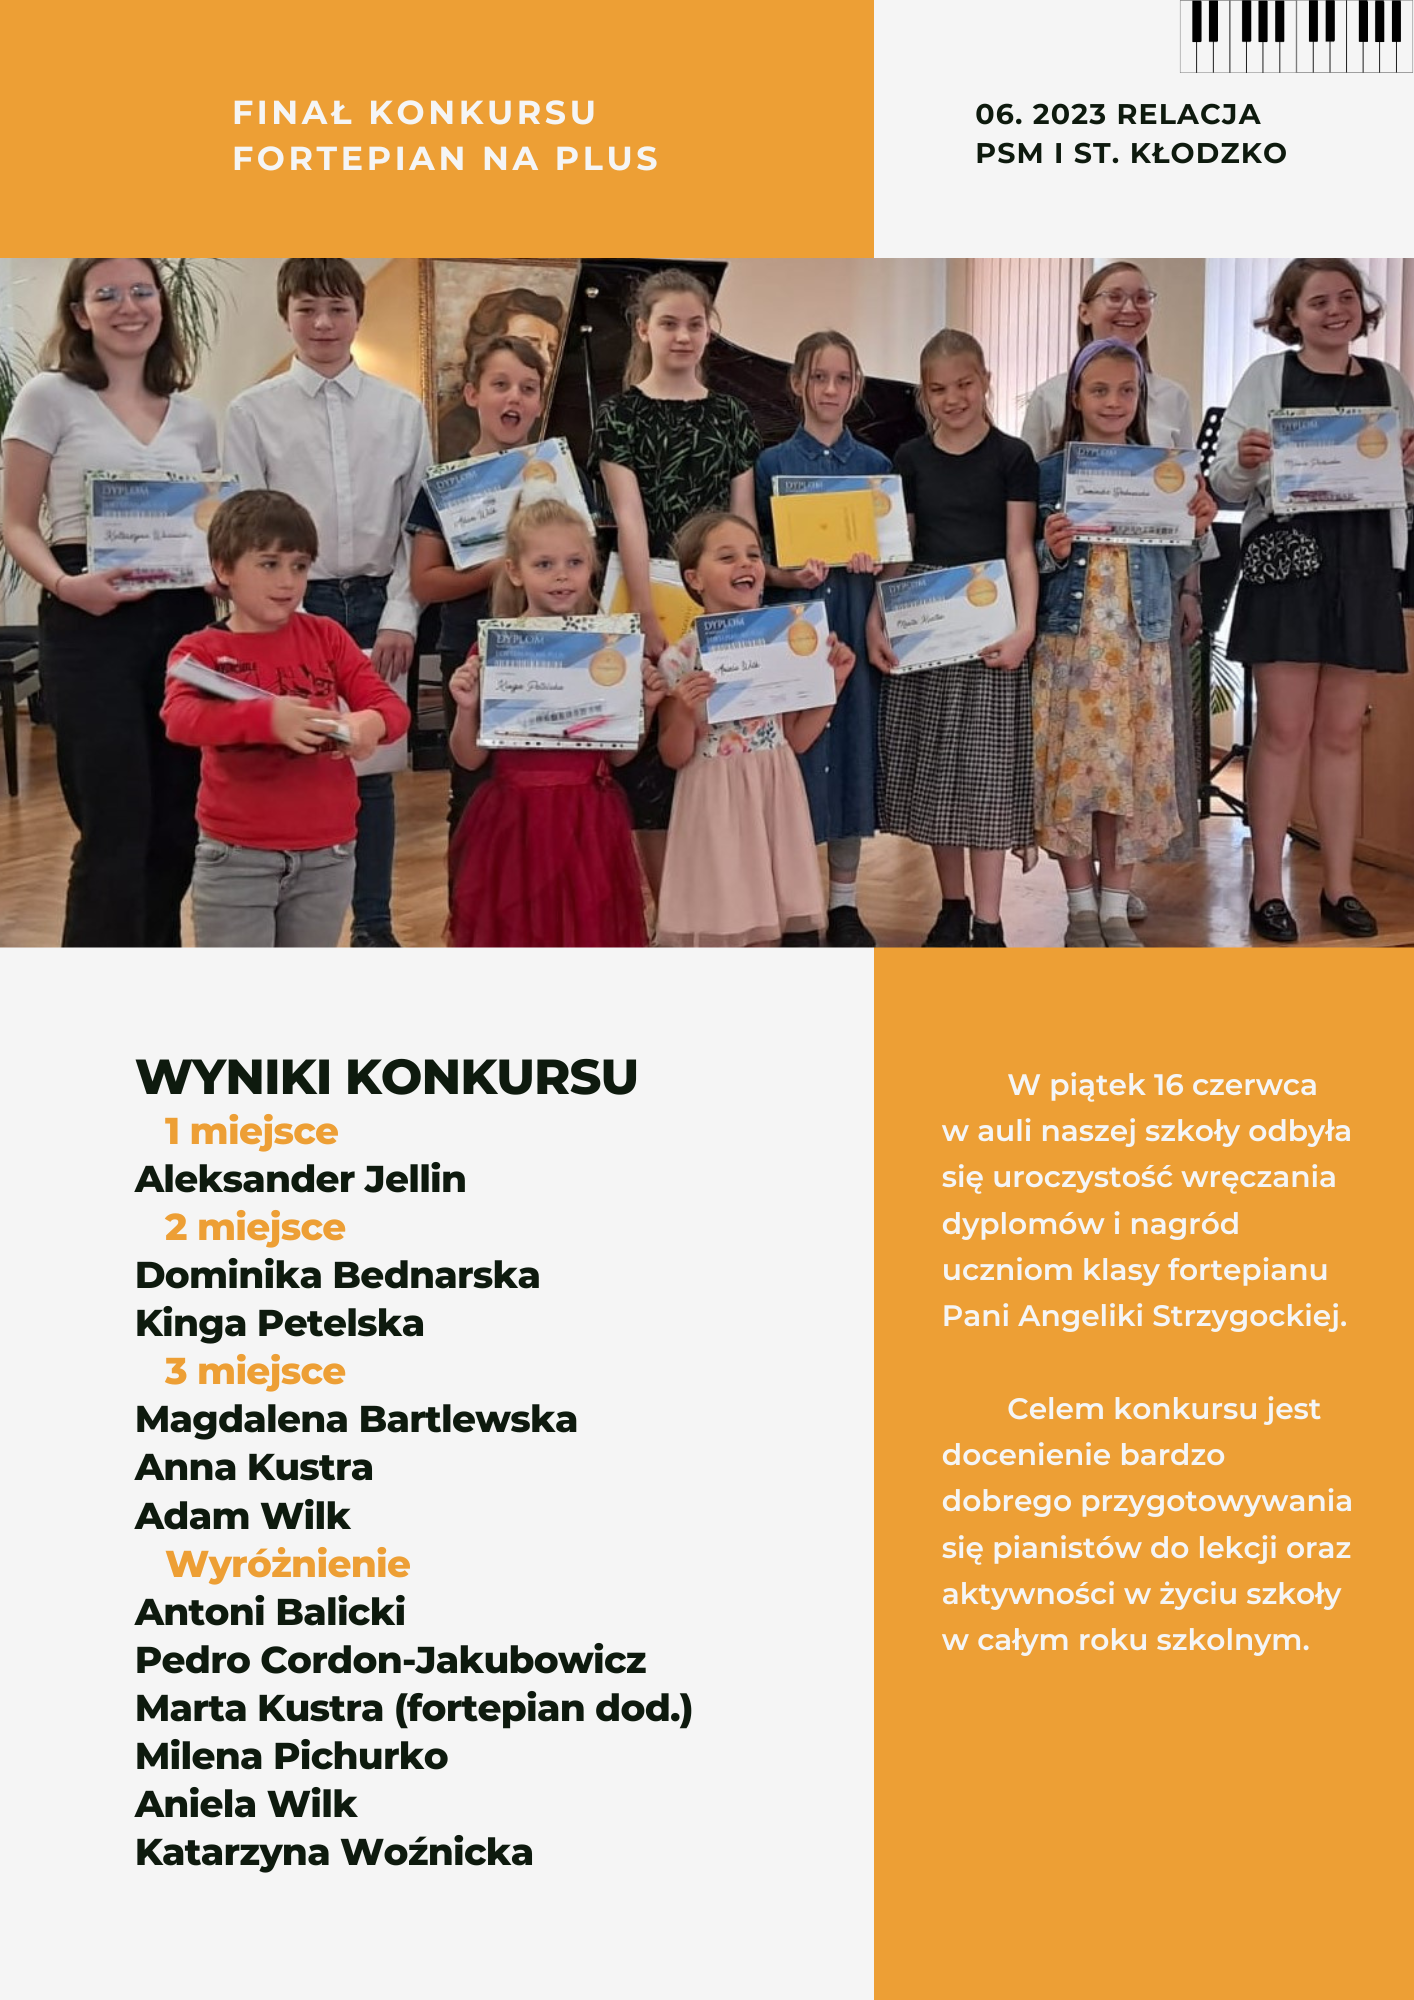 Plakat wraz ze zdjęciem uczestników konkursu fortepian na plus wraz z wynikami konkursu oraz informacją tekstową o konkursie